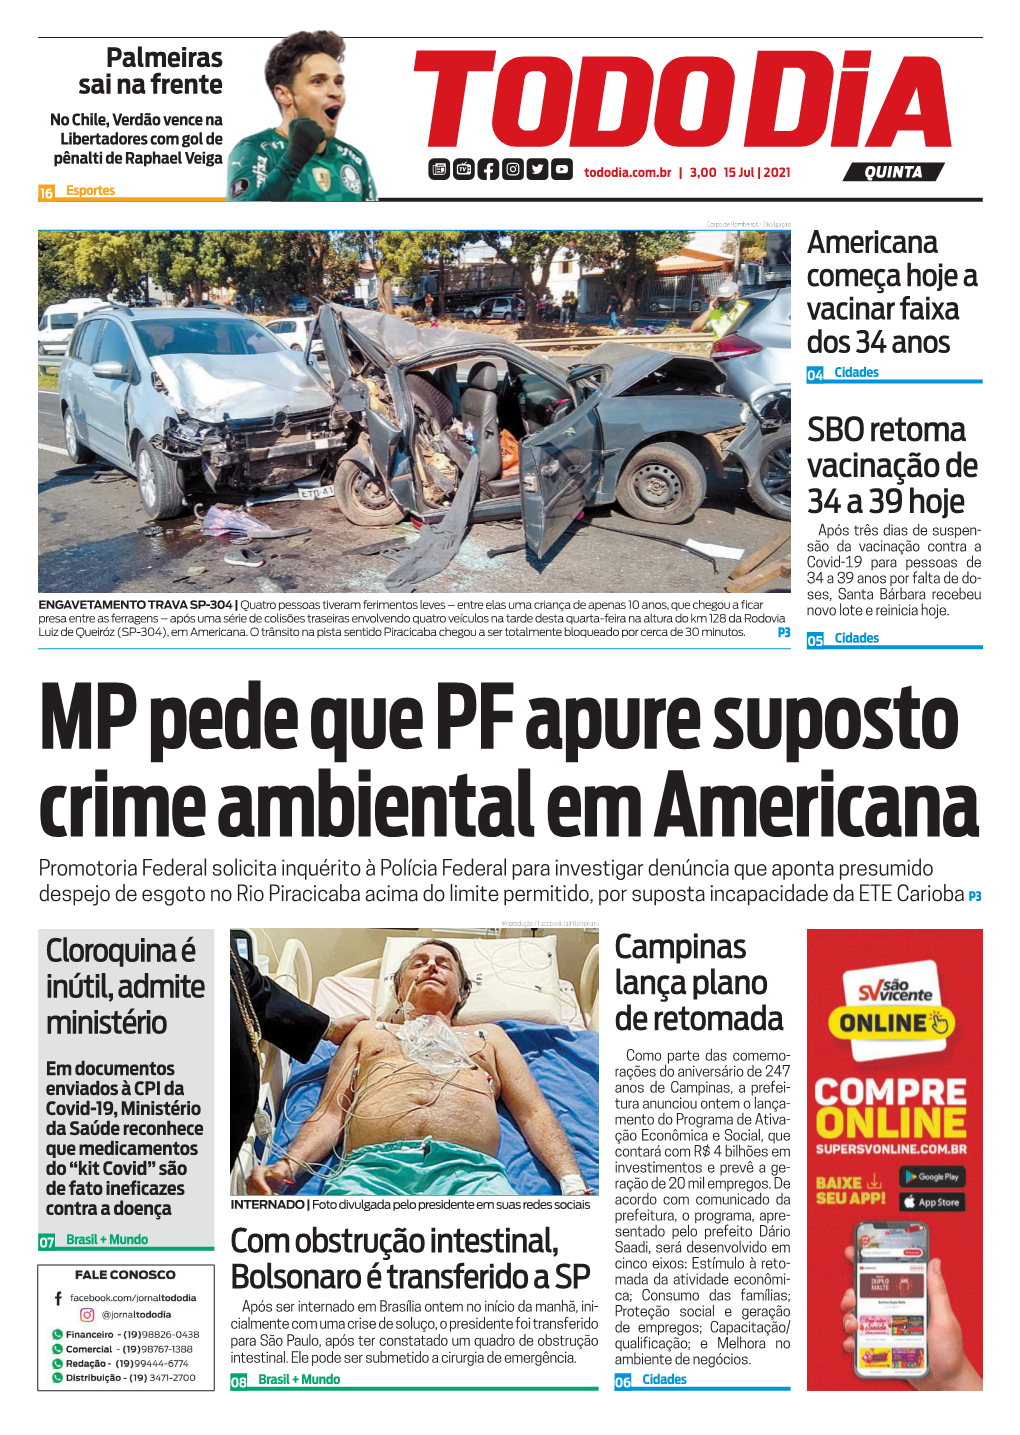 MP Pede Que PF Apure Suposto Crime Ambiental